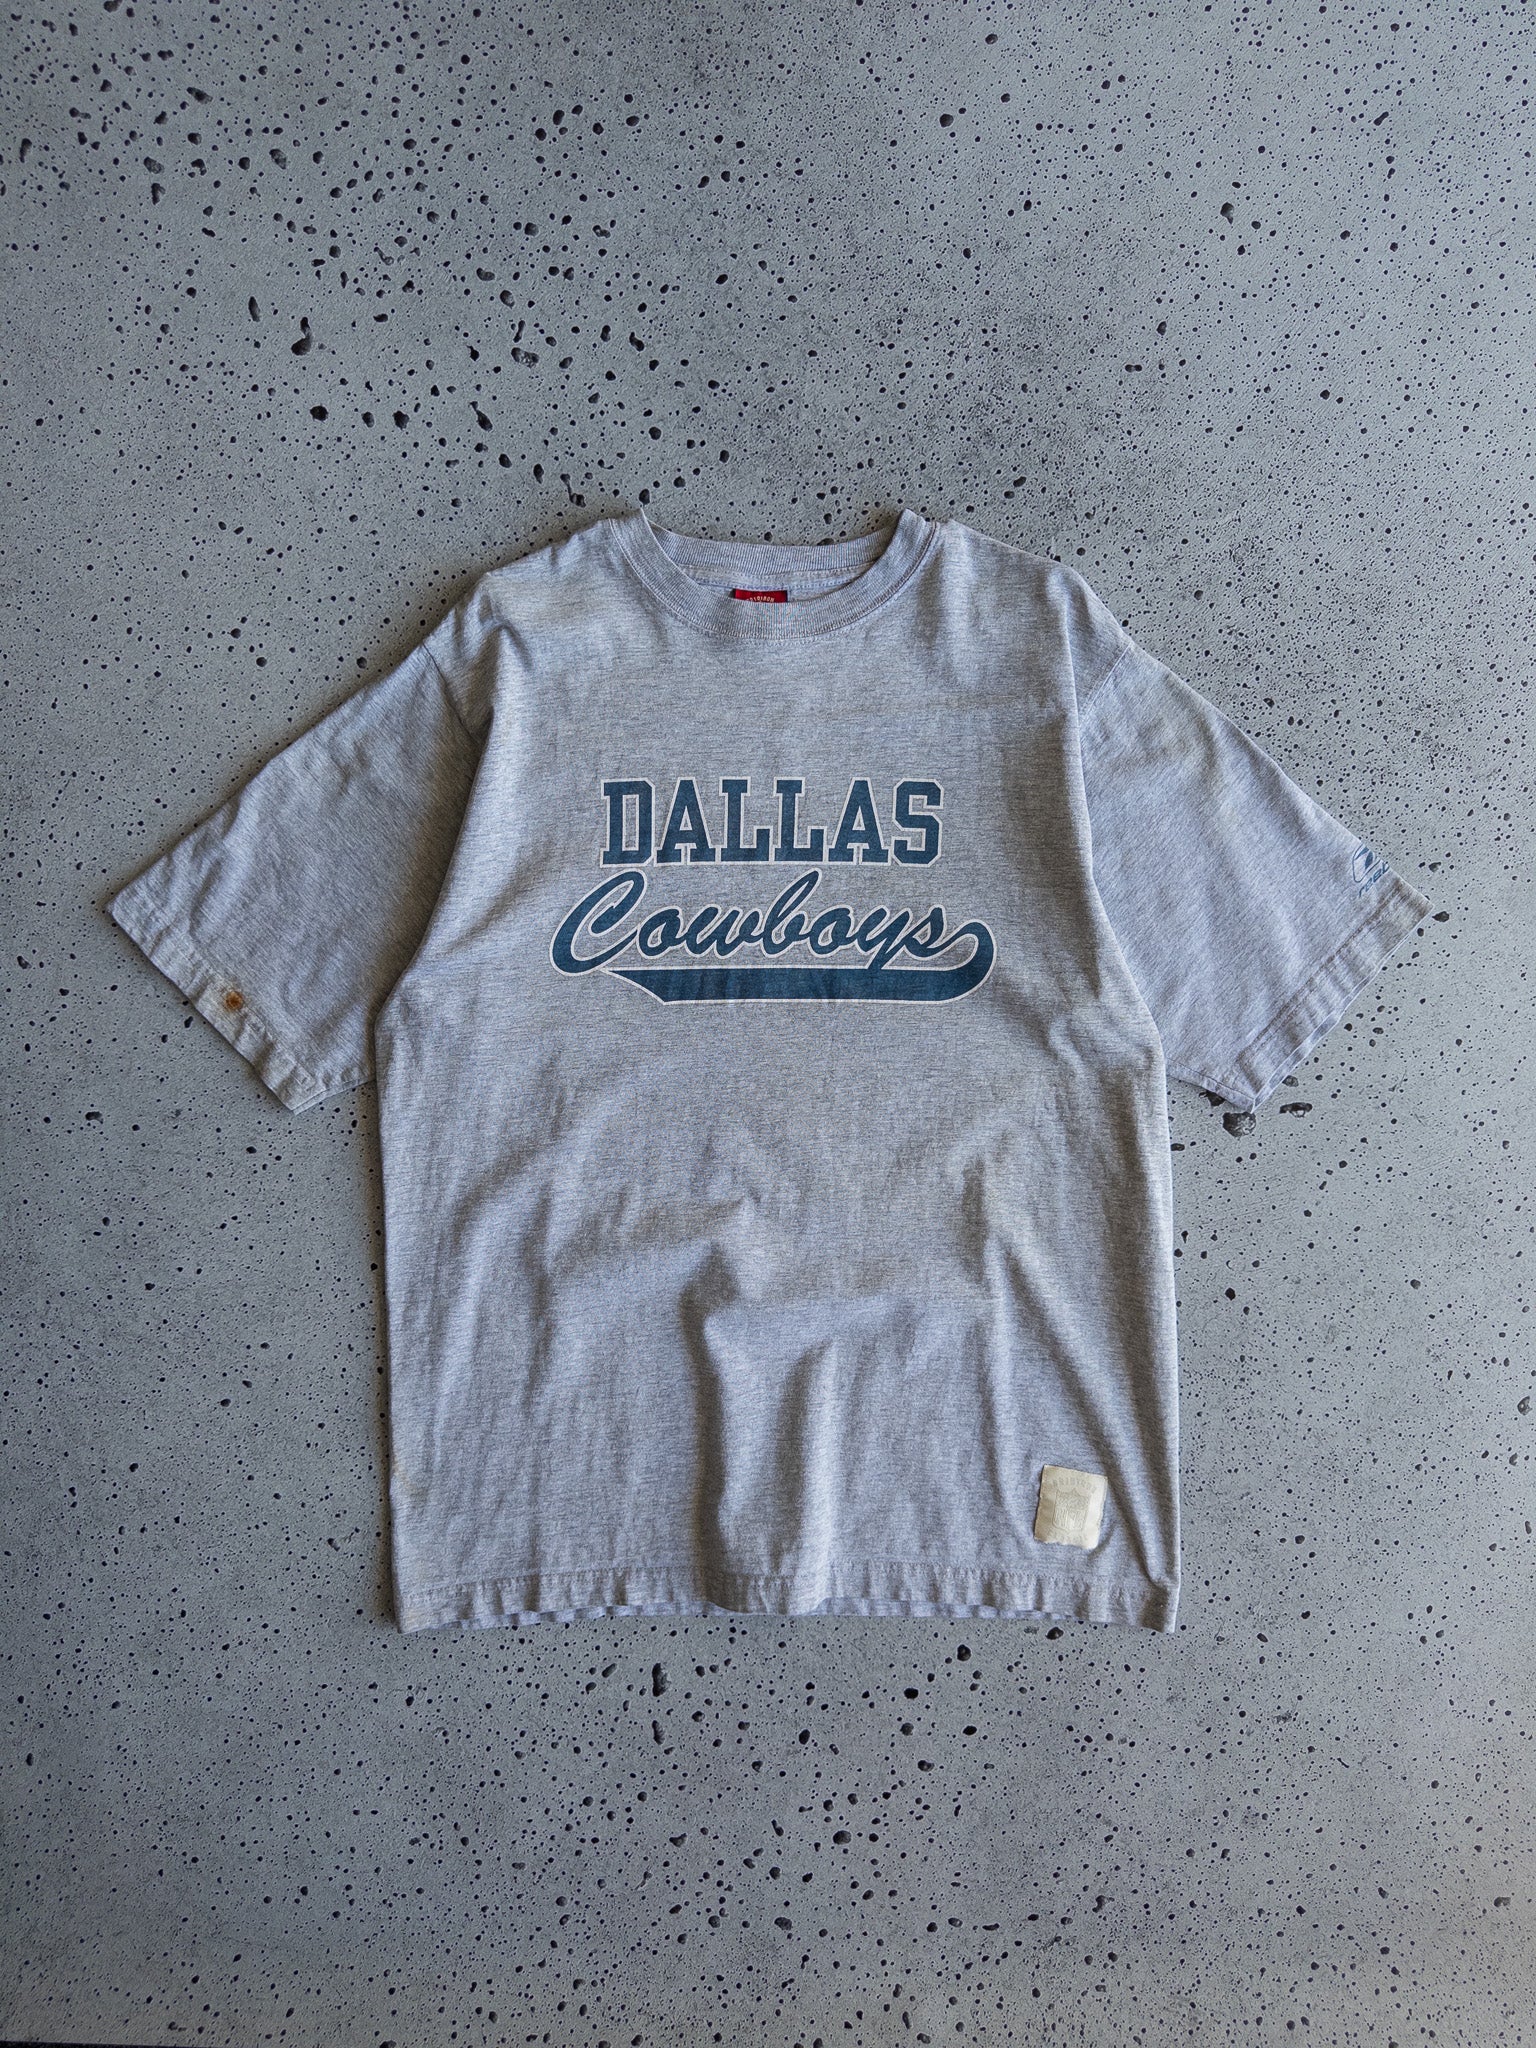 Vintage Dallas Cowboys Tee (M)